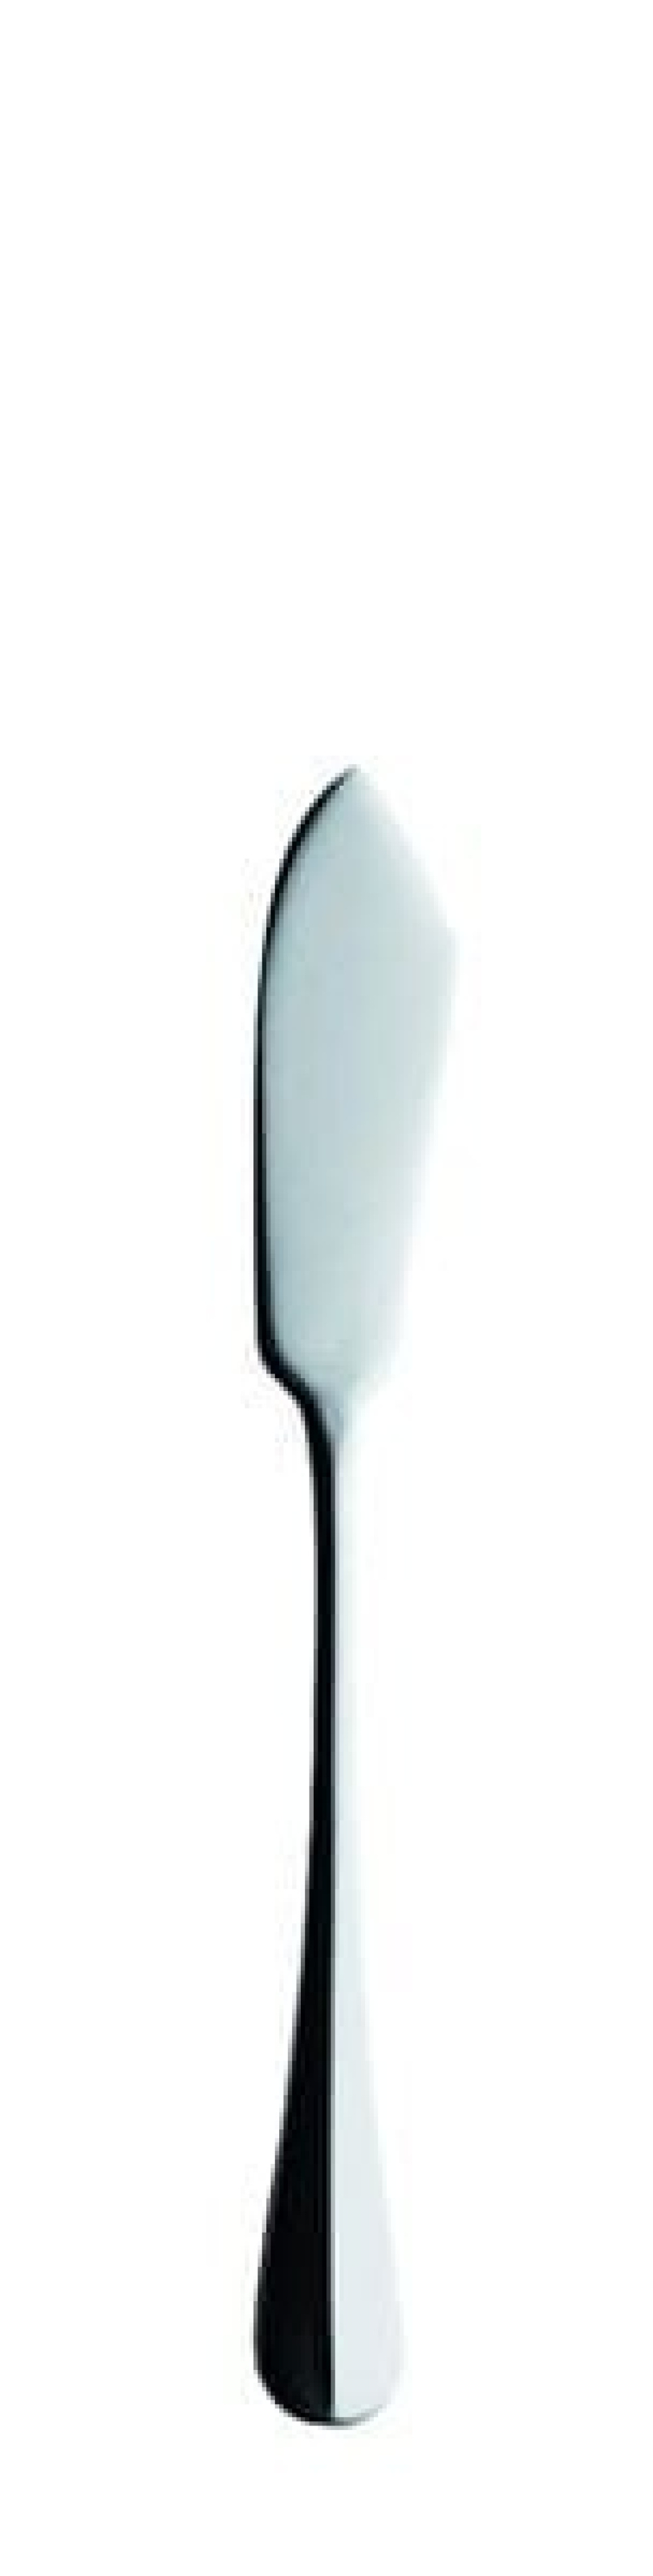 Baguette Fischmesser, 208 mm in der Gruppe Tischgedeck / Besteck / Messer bei The Kitchen Lab (1284-14157)